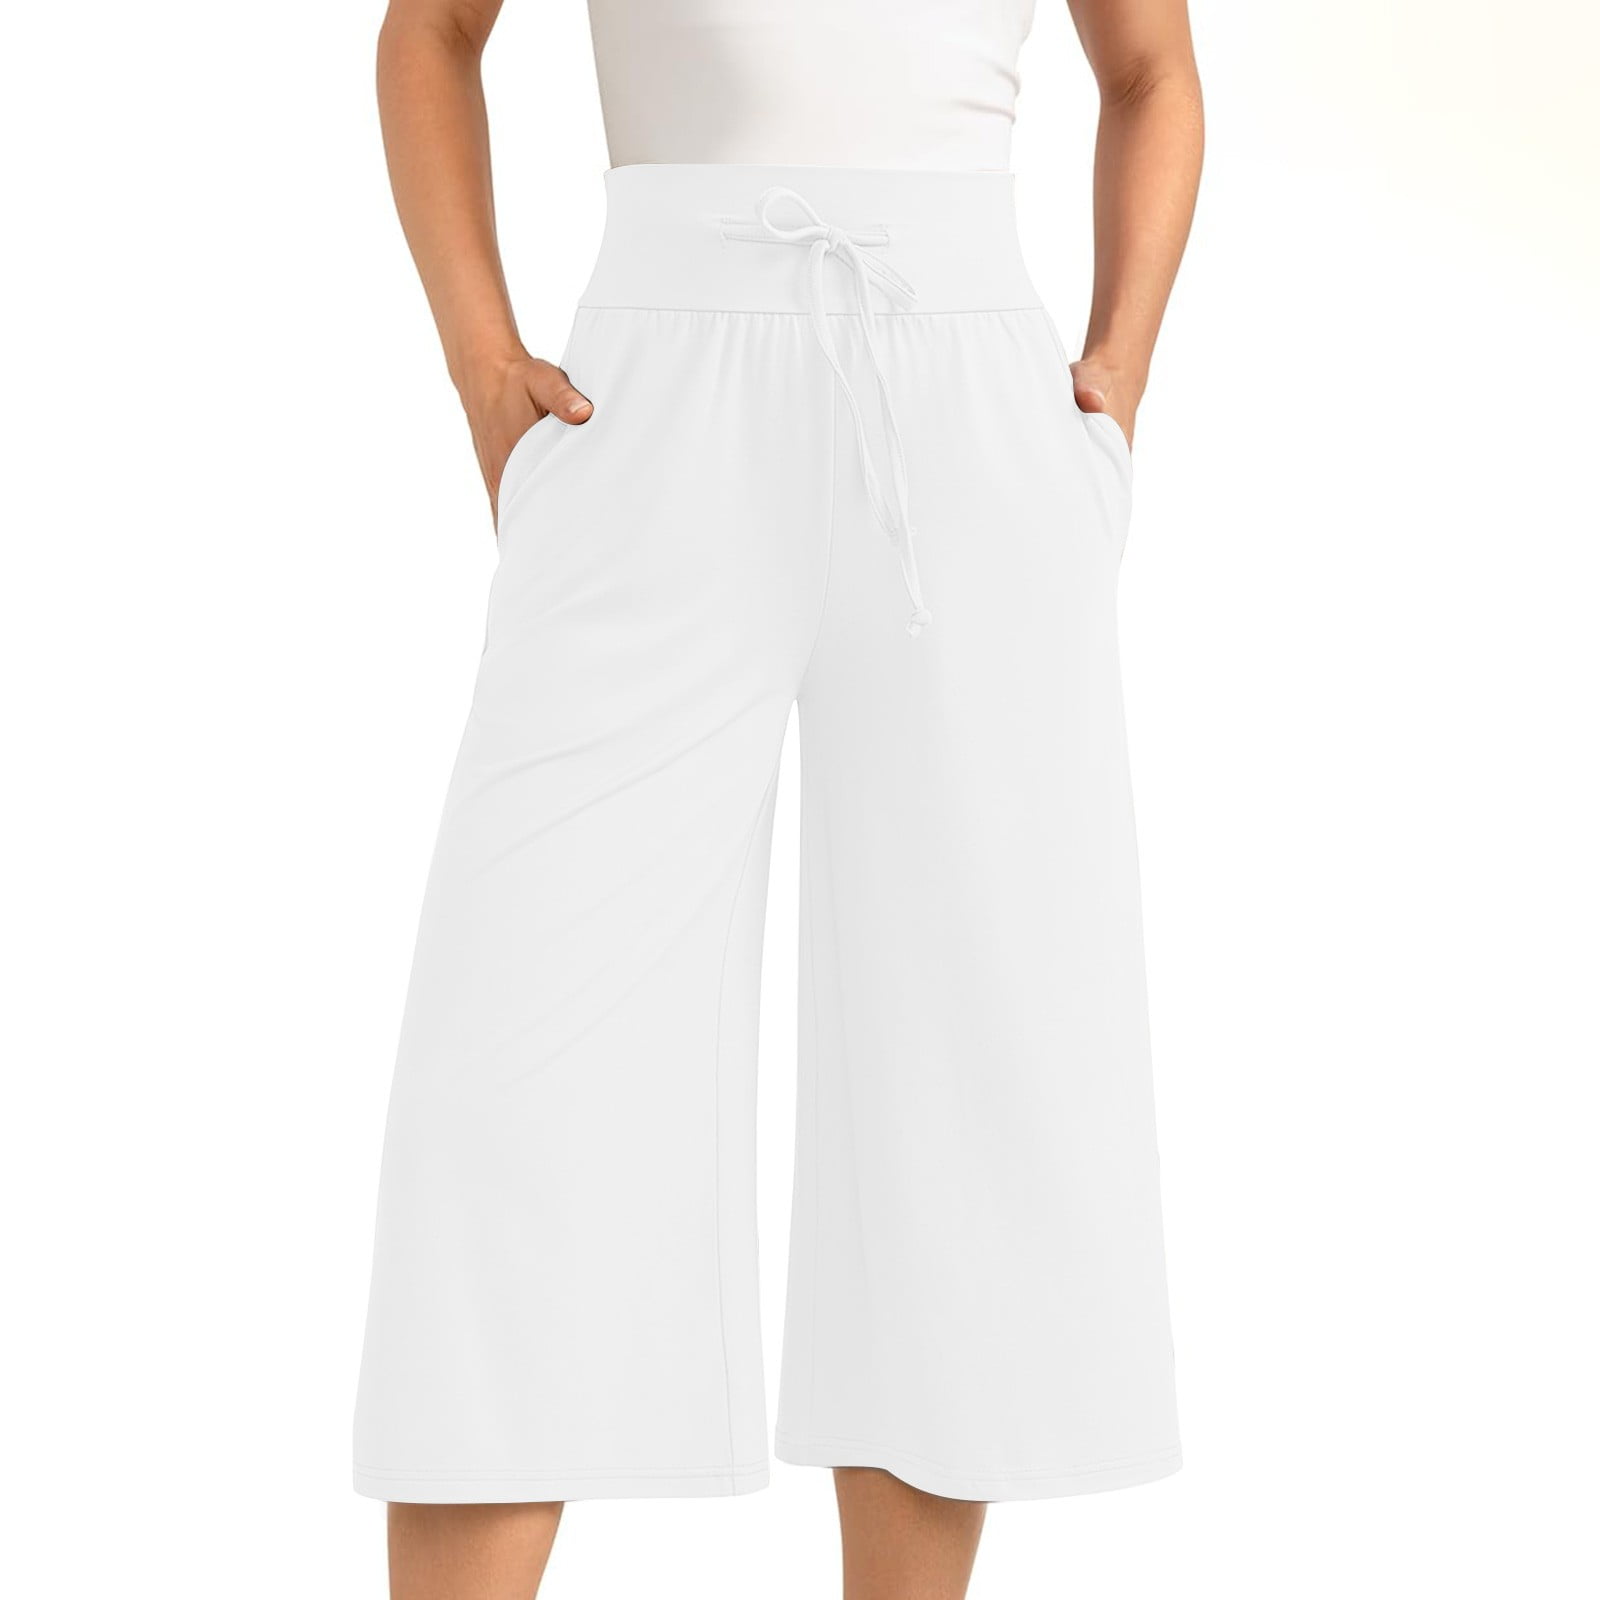 Ashirexll Women's Capri Pants, Wide Leg Capris for Women, Solid Color ...